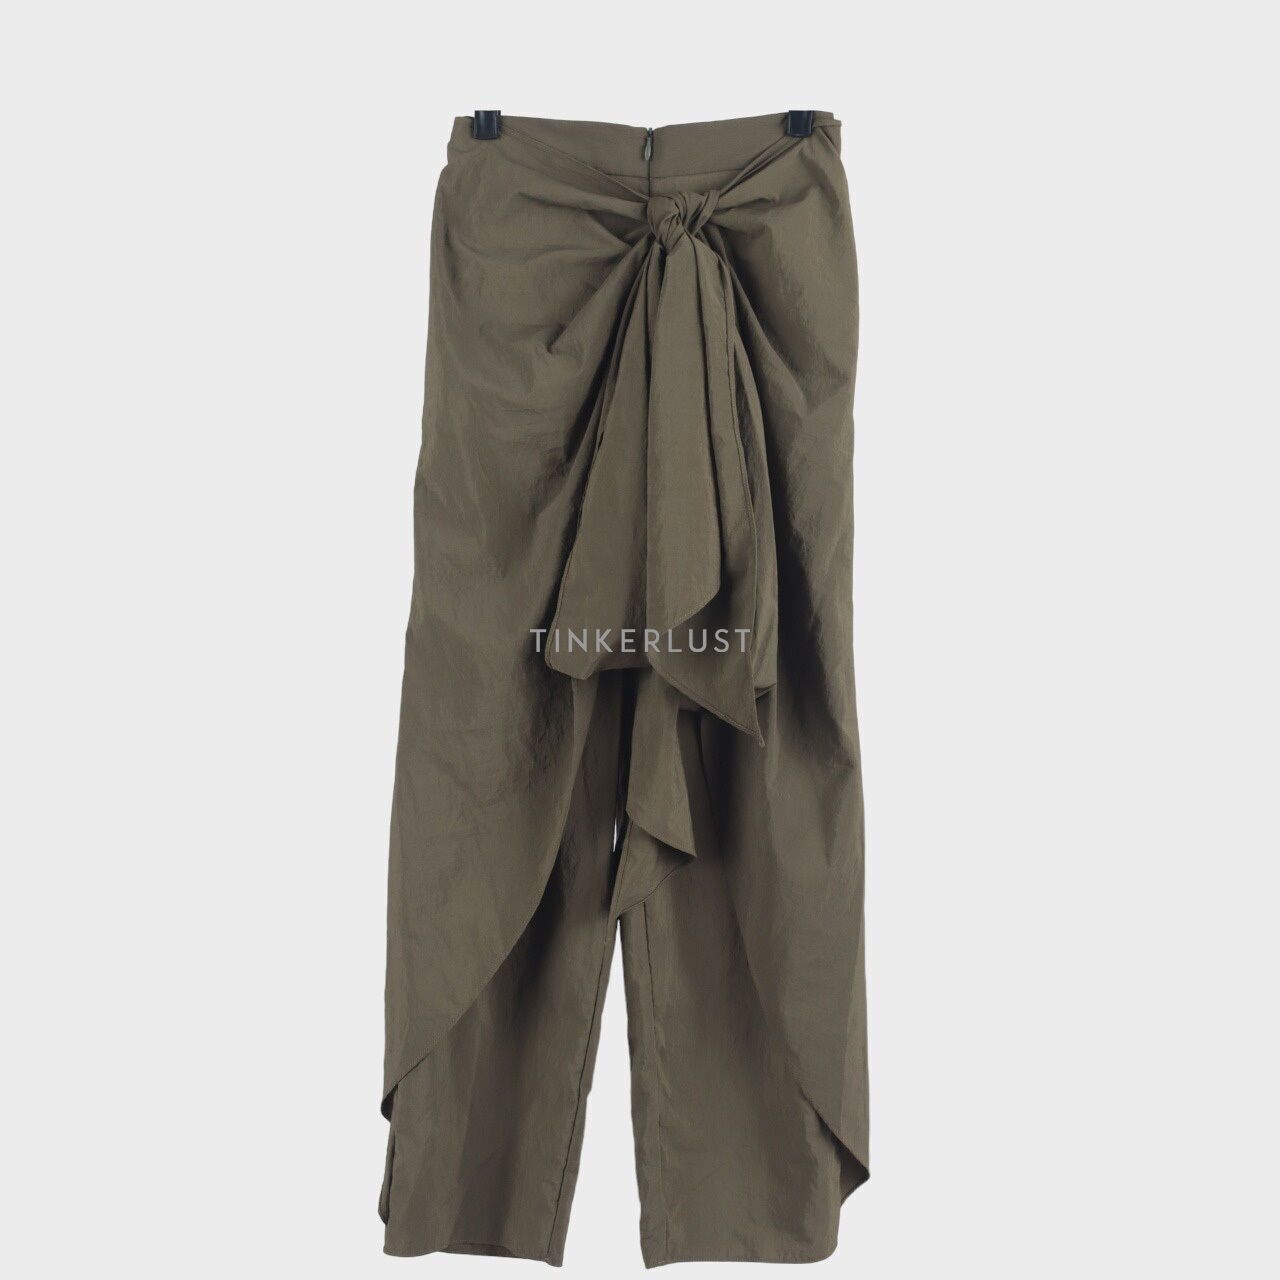 Pafon Dark Olive Green Long Pants